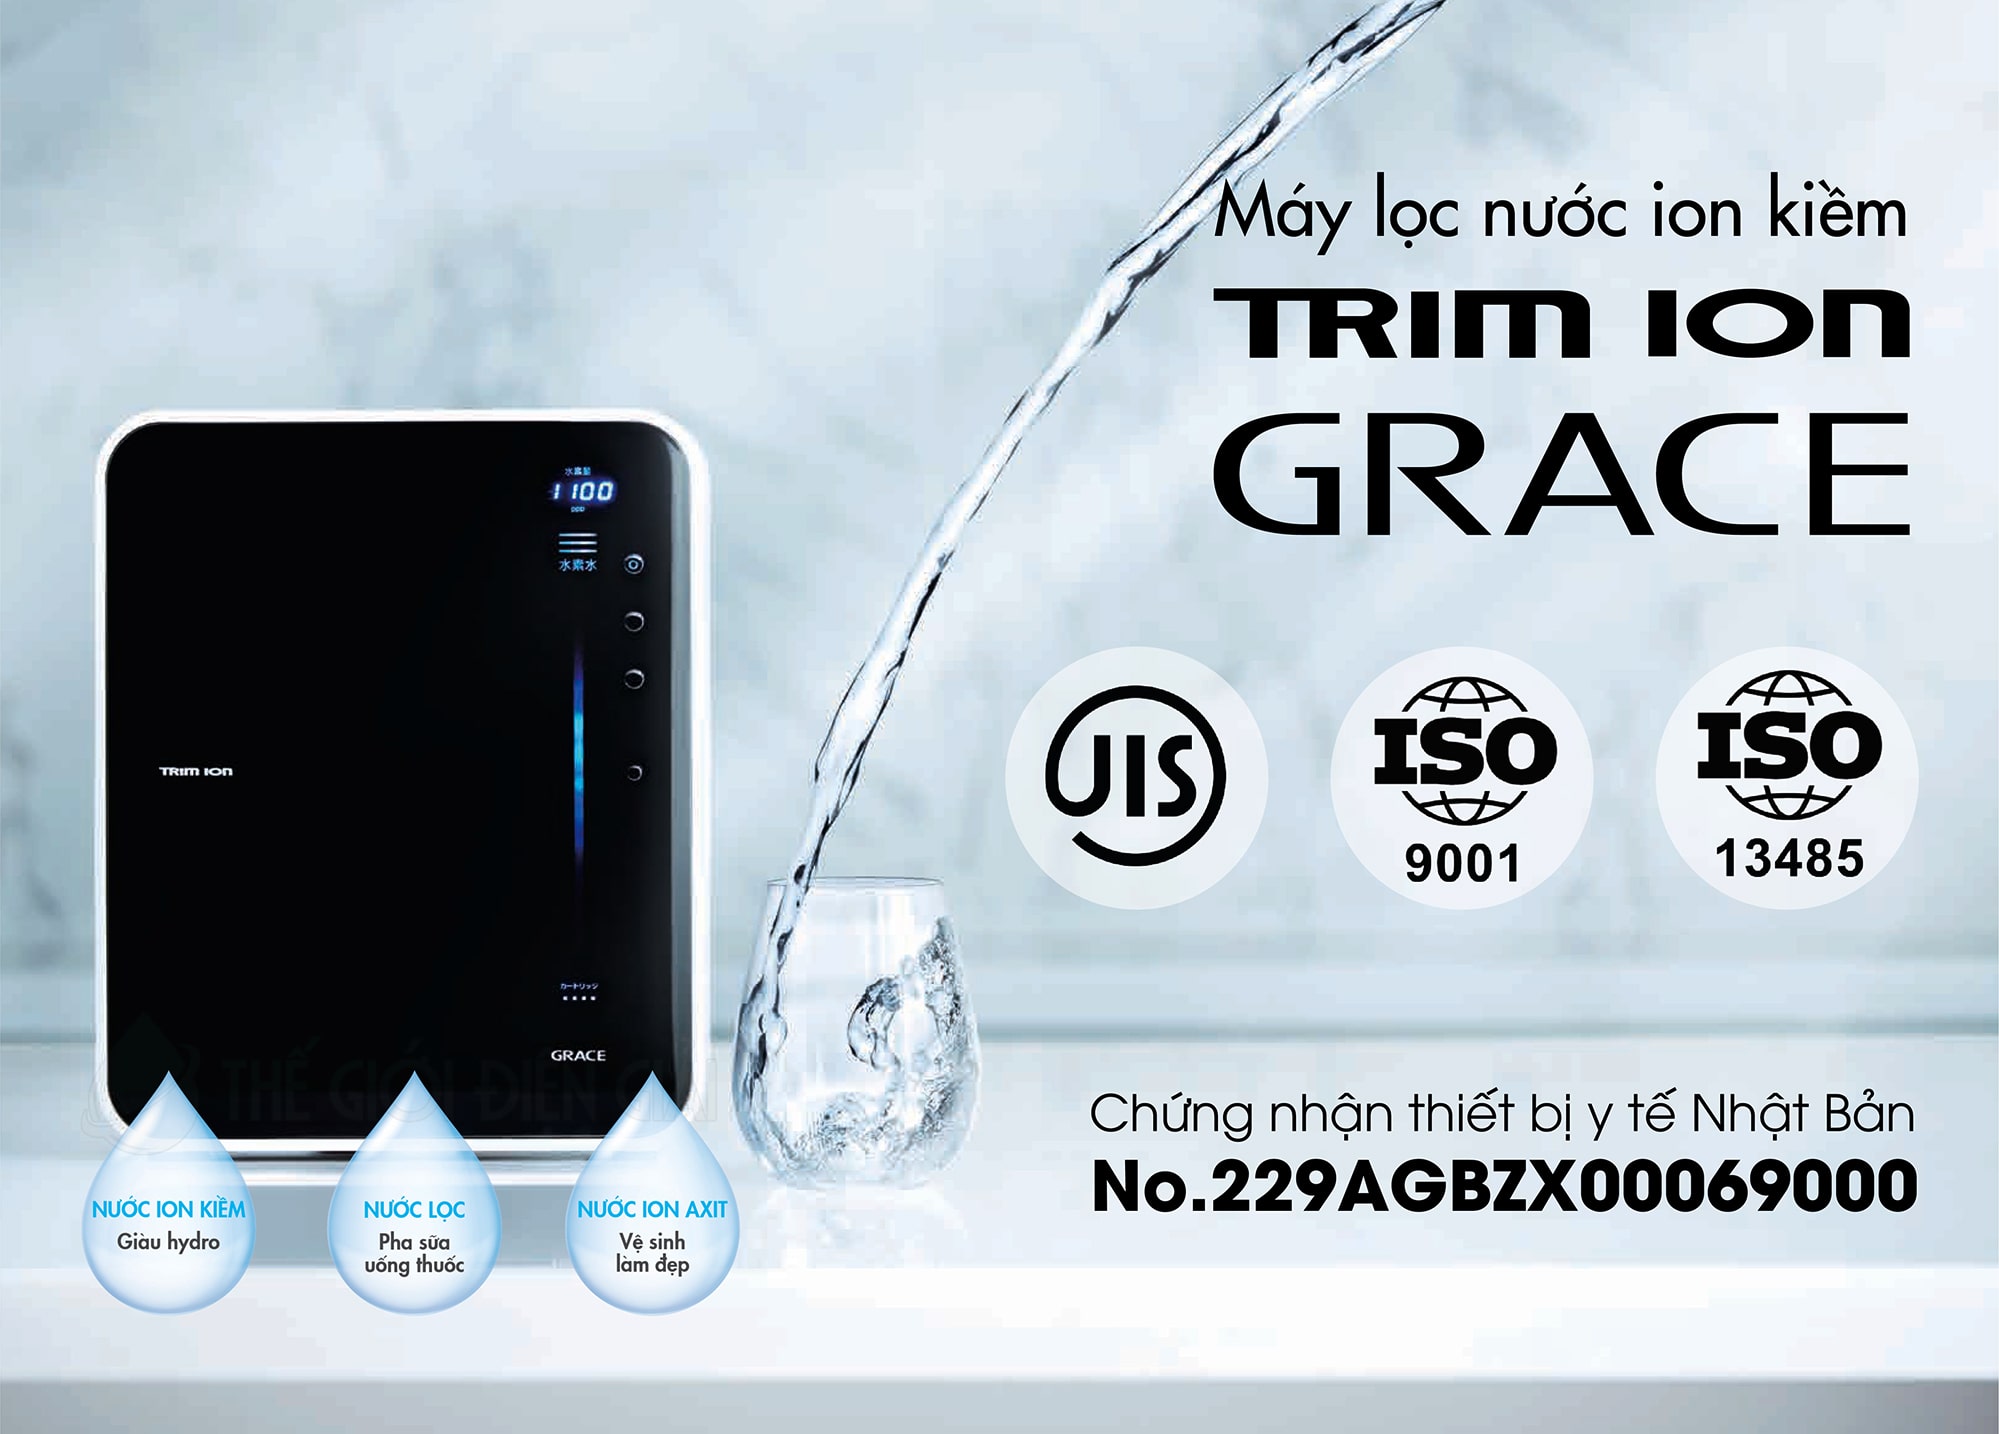 Trim ion Grace là sản phẩm được nghiên cứu và sản xuất đến từ Nhật Bản